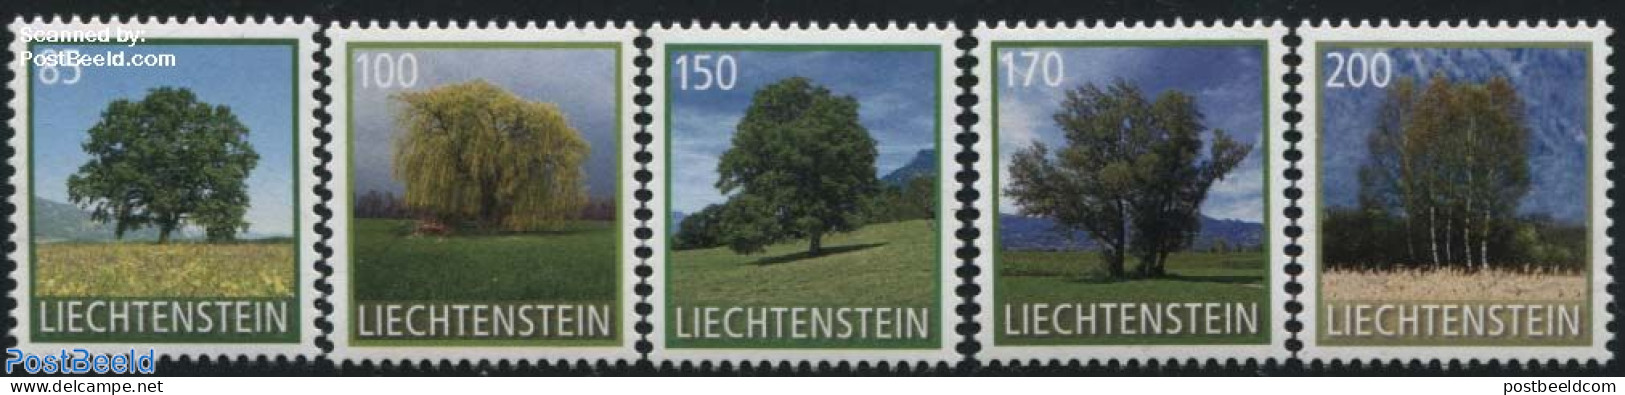 Liechtenstein 2016 Definitives, Trees 5v S-a, Mint NH, Nature - Trees & Forests - Ongebruikt